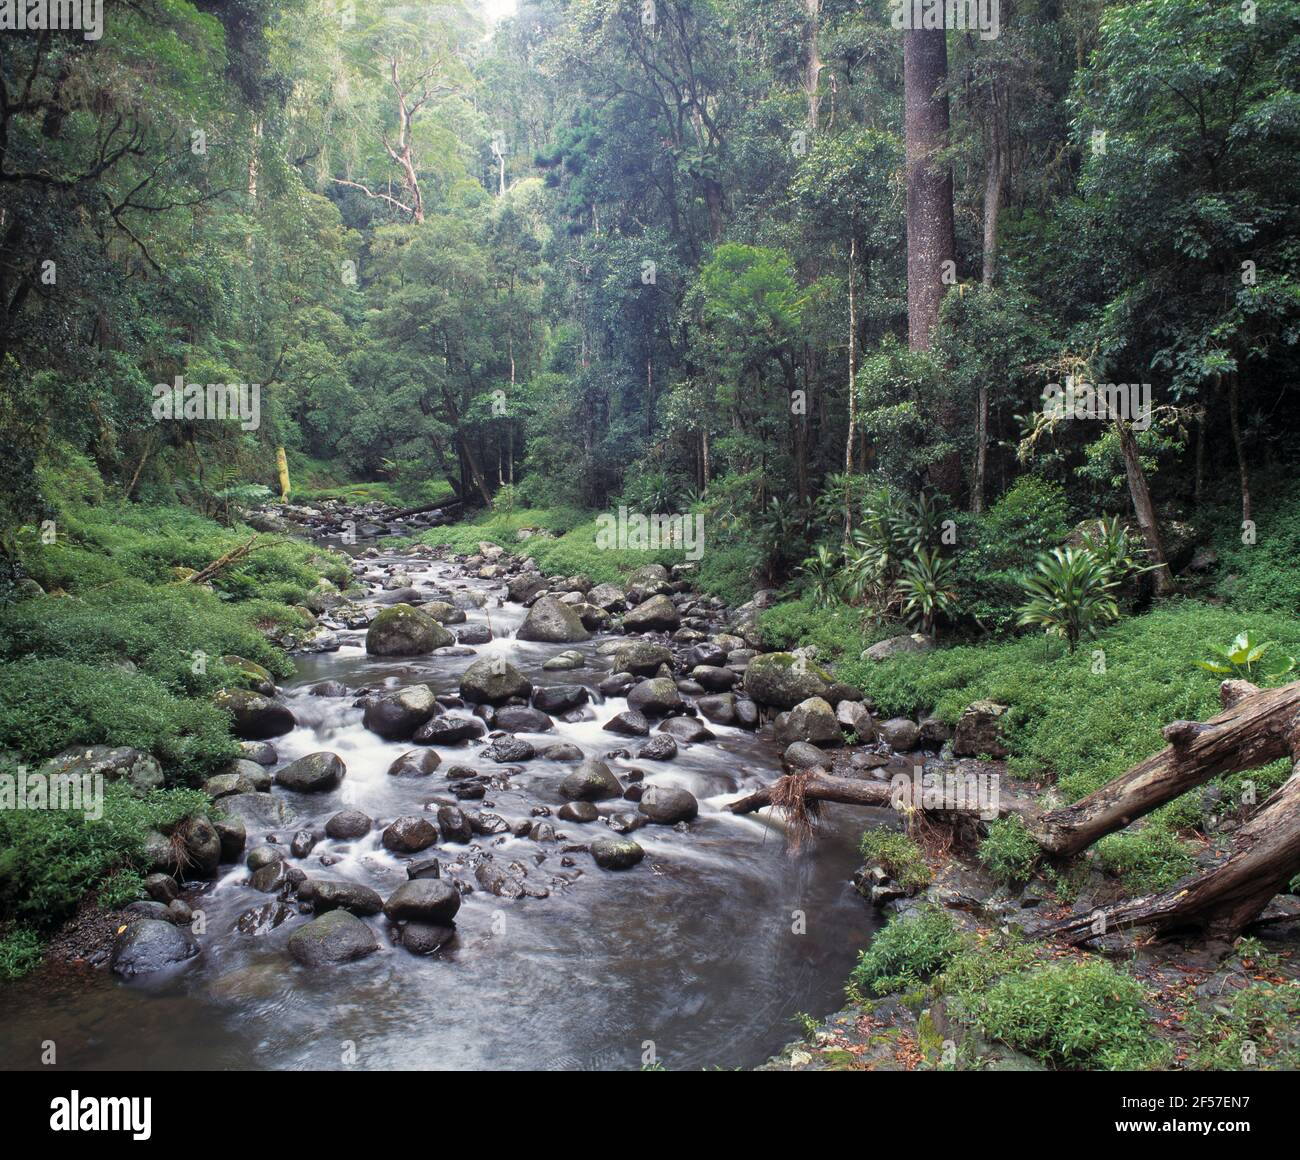 Australien. Queensland. Lamington National Park. Schnell fließender Strom durch Wald. Stockfoto